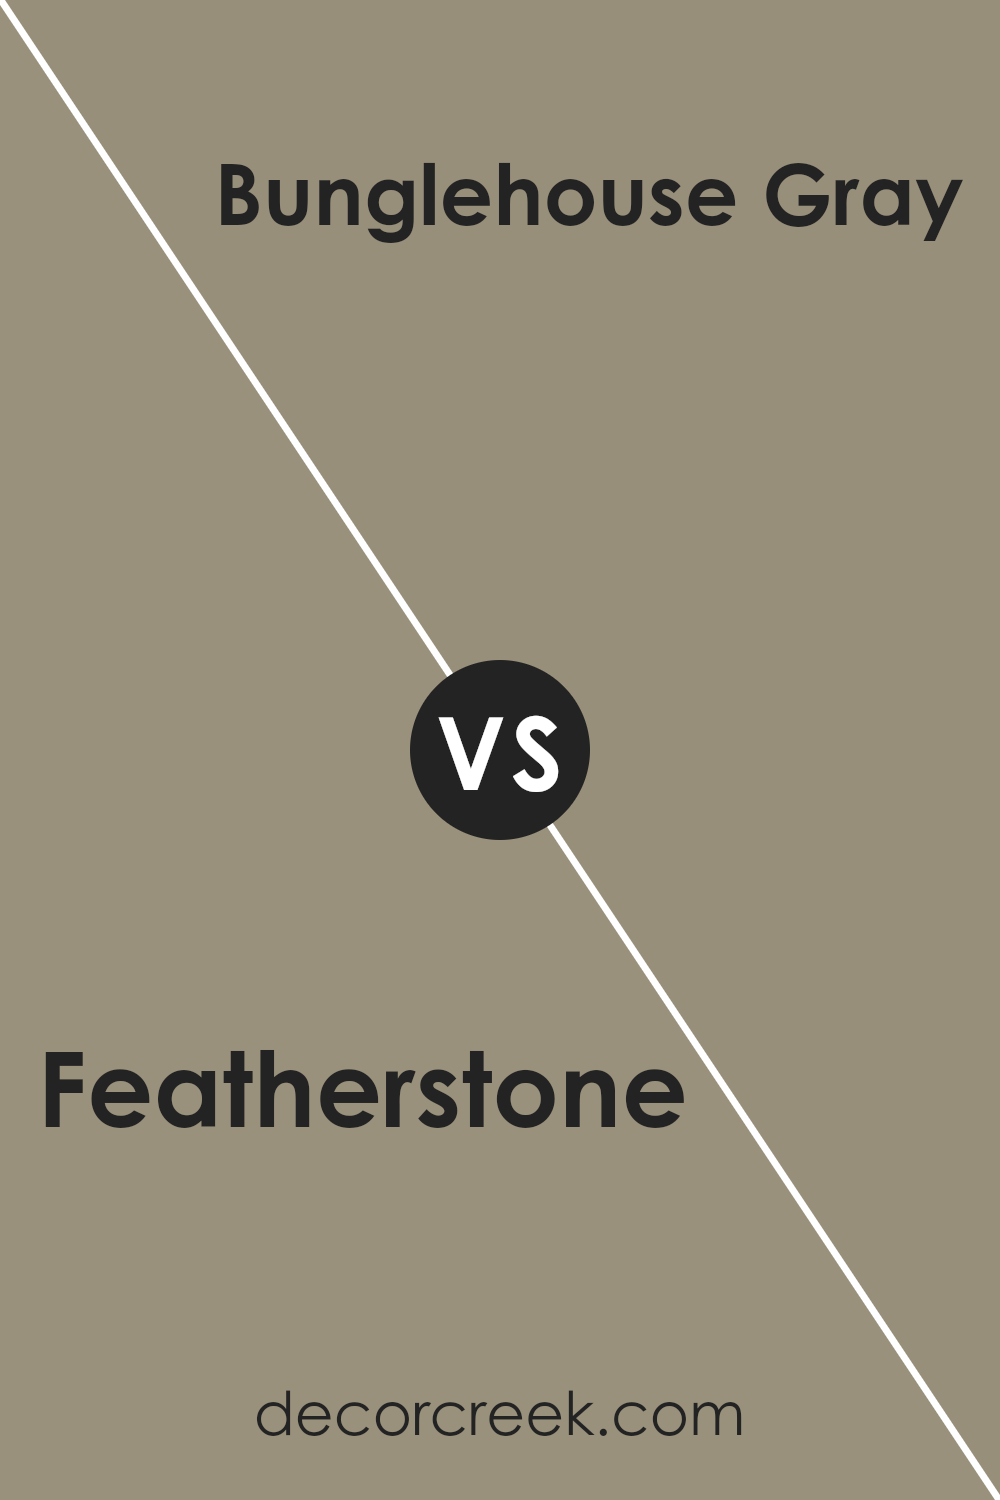 featherstone_sw_9518_vs_bunglehouse_gray_sw_2845